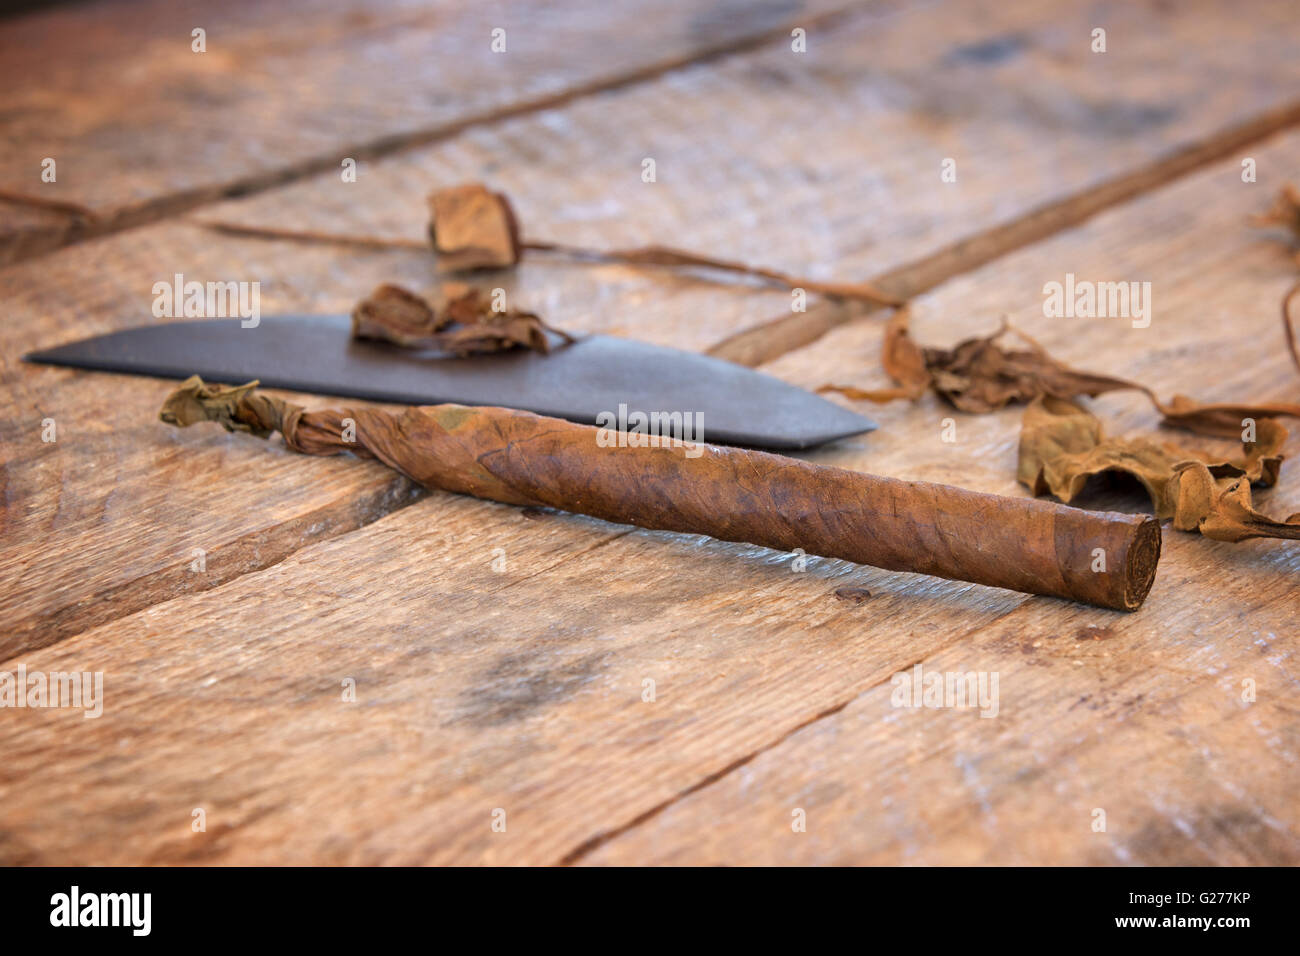 Cerca de un cigarro artesanal cubana, con hojas de tabaco secas Foto de stock